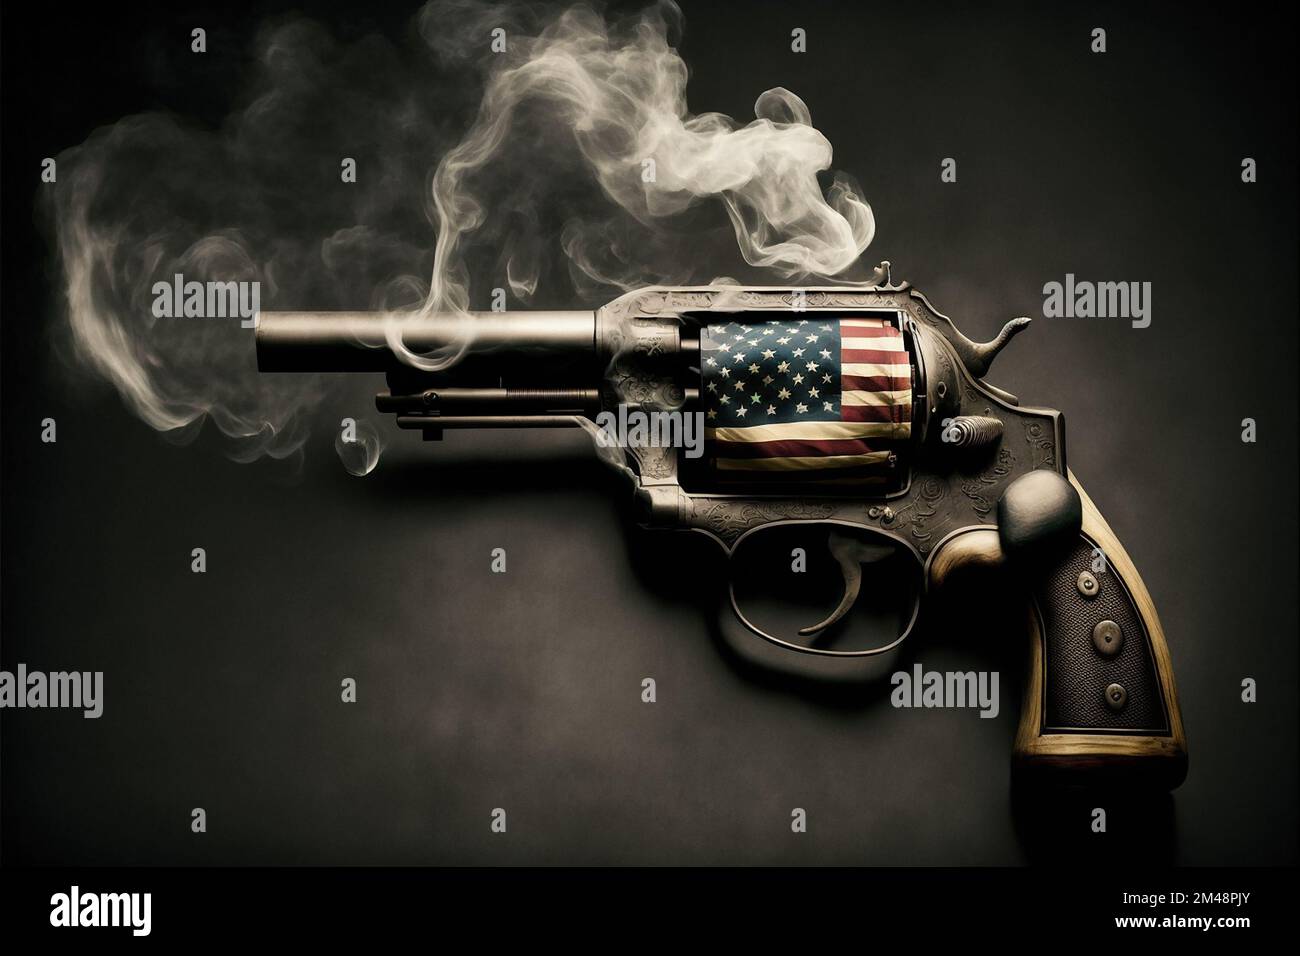 Illustration pour la culture des armes à feu aux États-Unis Banque D'Images